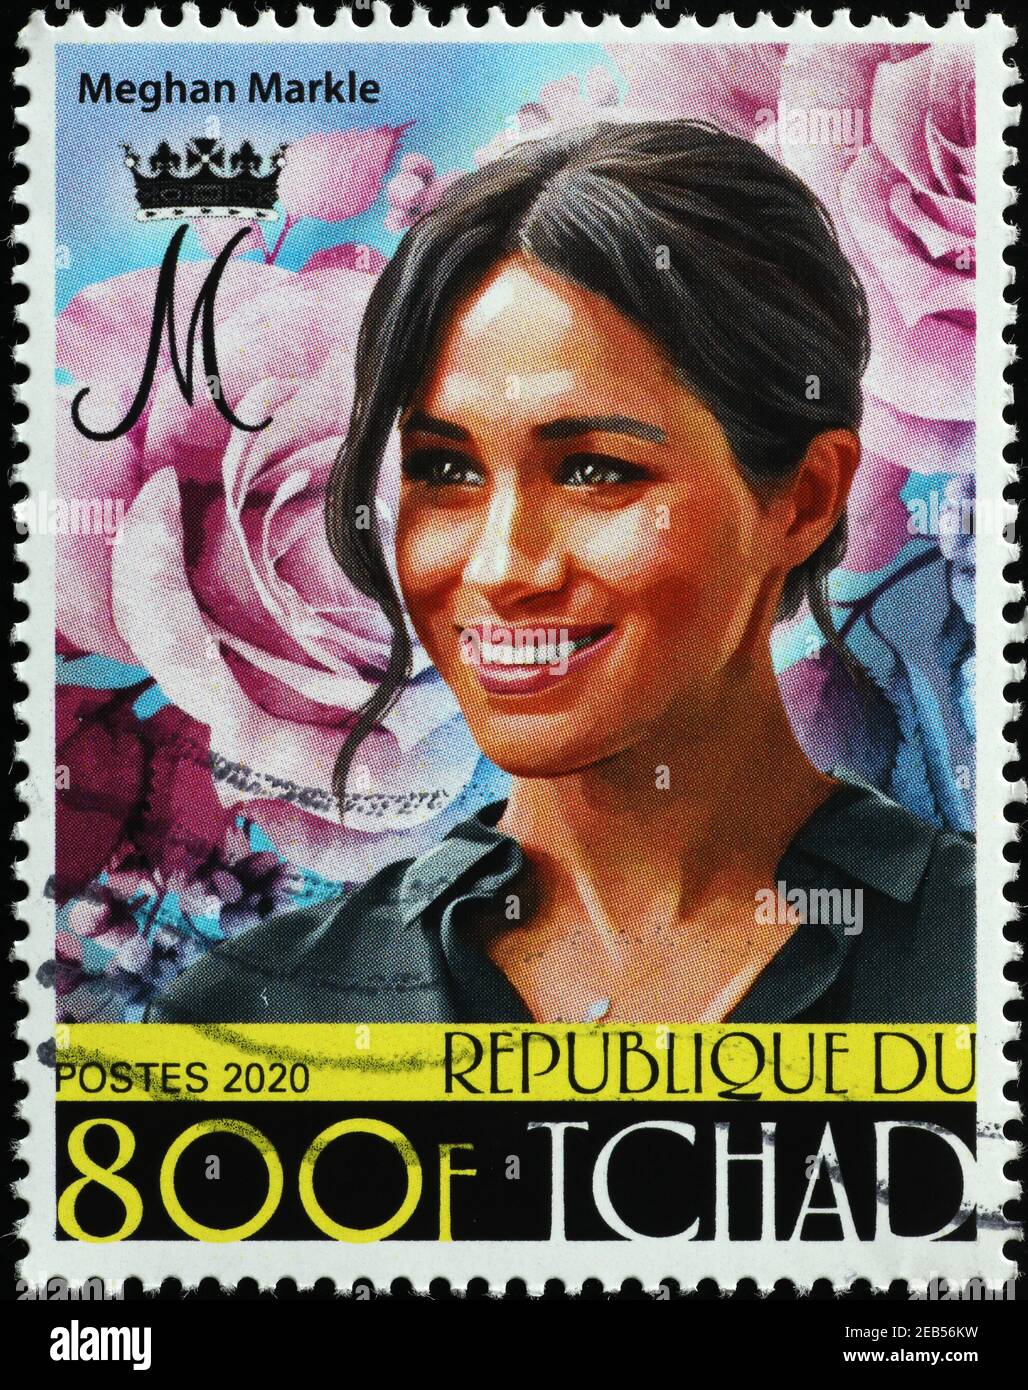 Meghan Markle sur le timbre-poste africain Banque D'Images